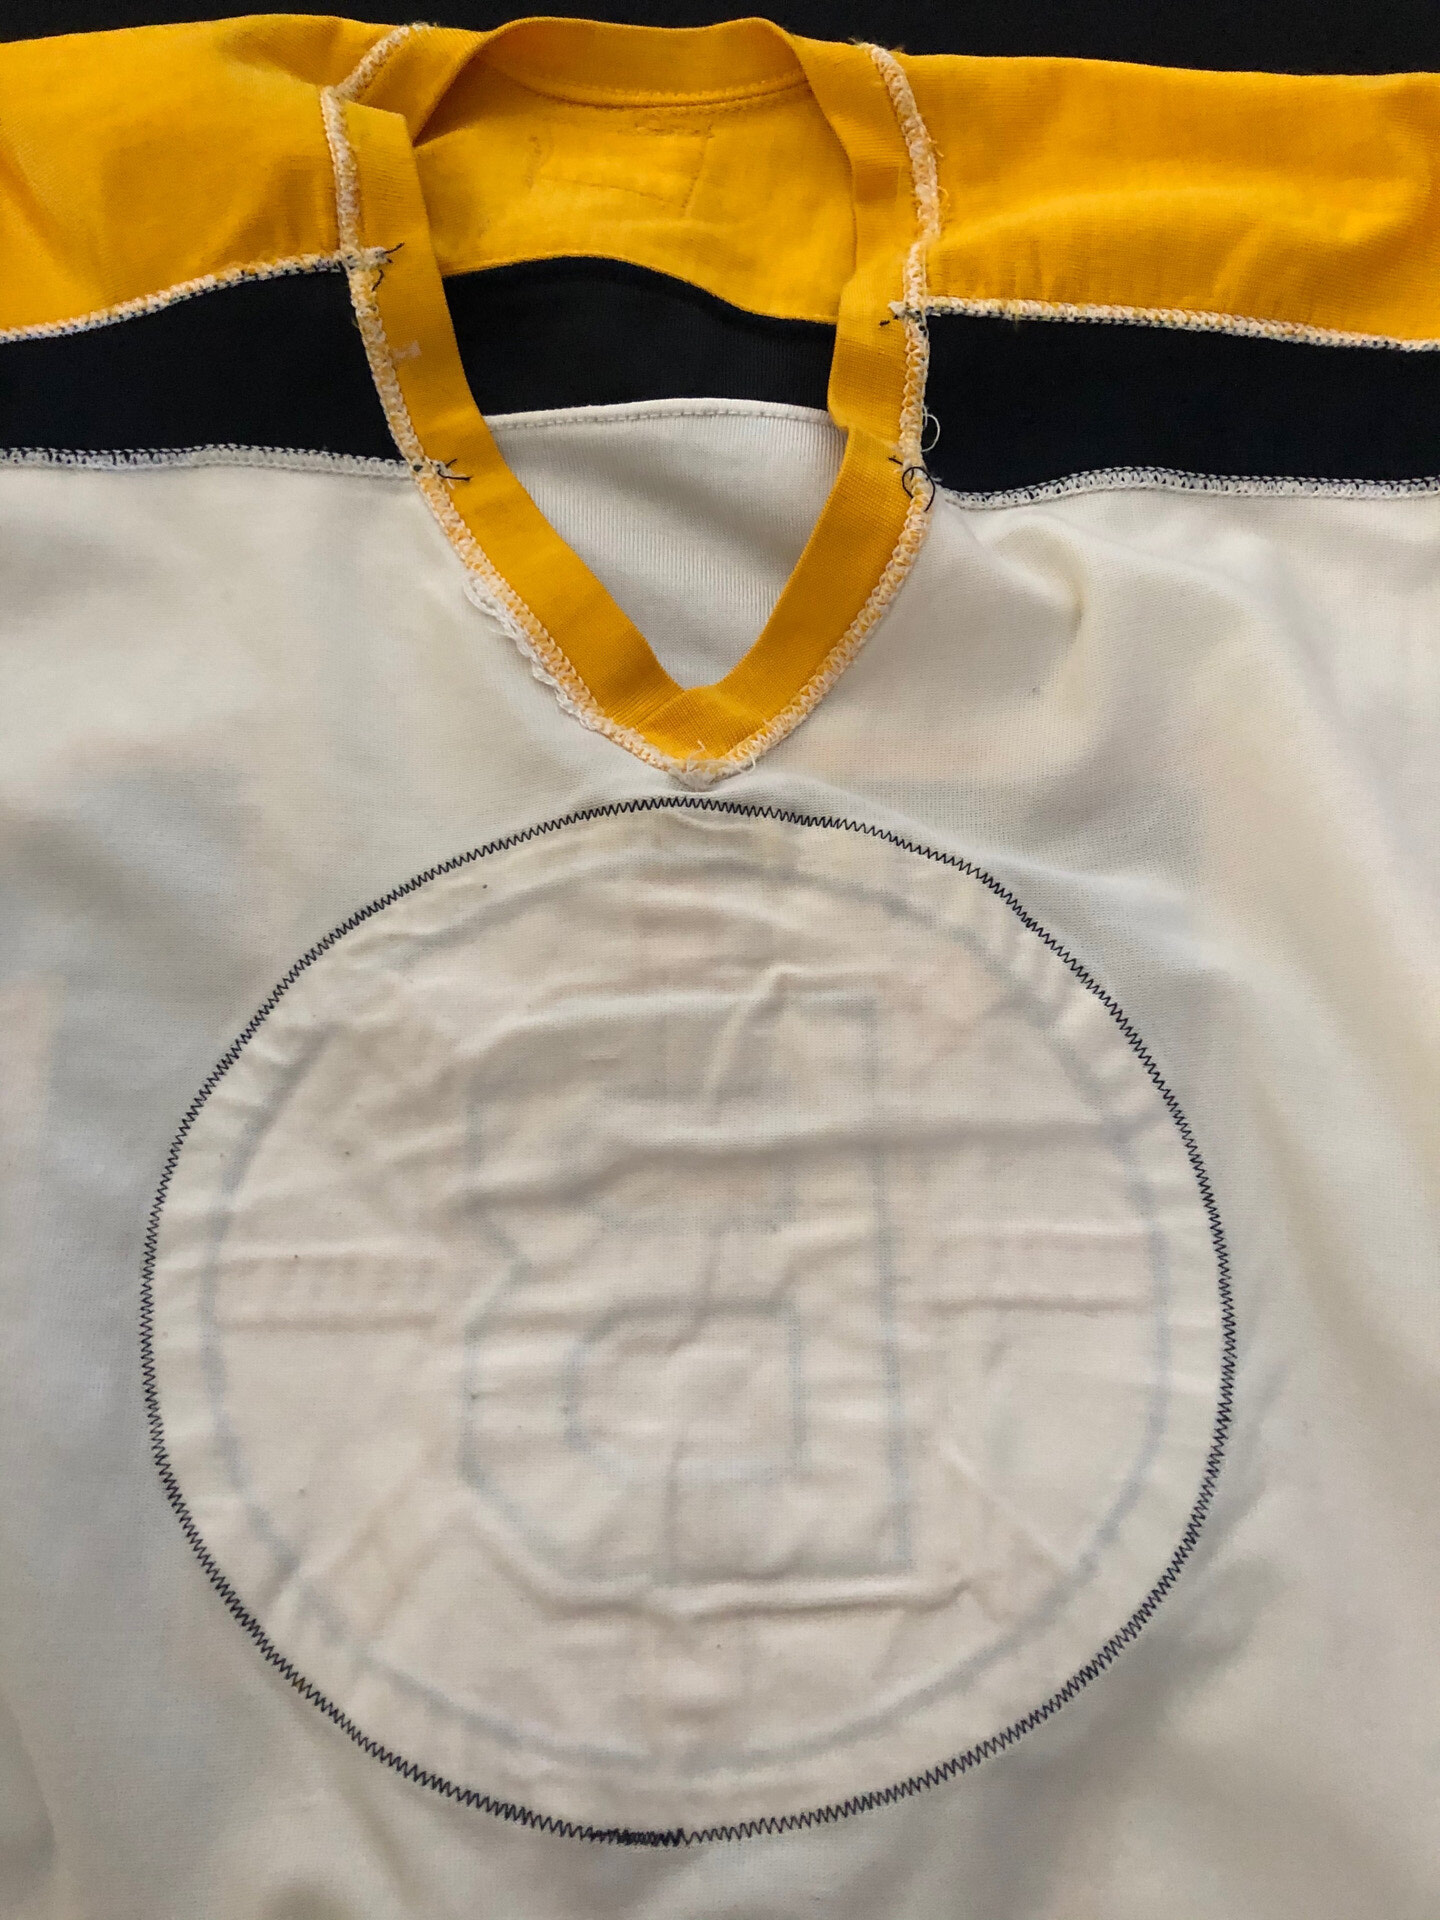 1973-74 Derek Sanderson/Bobby Schmautz Bruins Game Worn Jersey